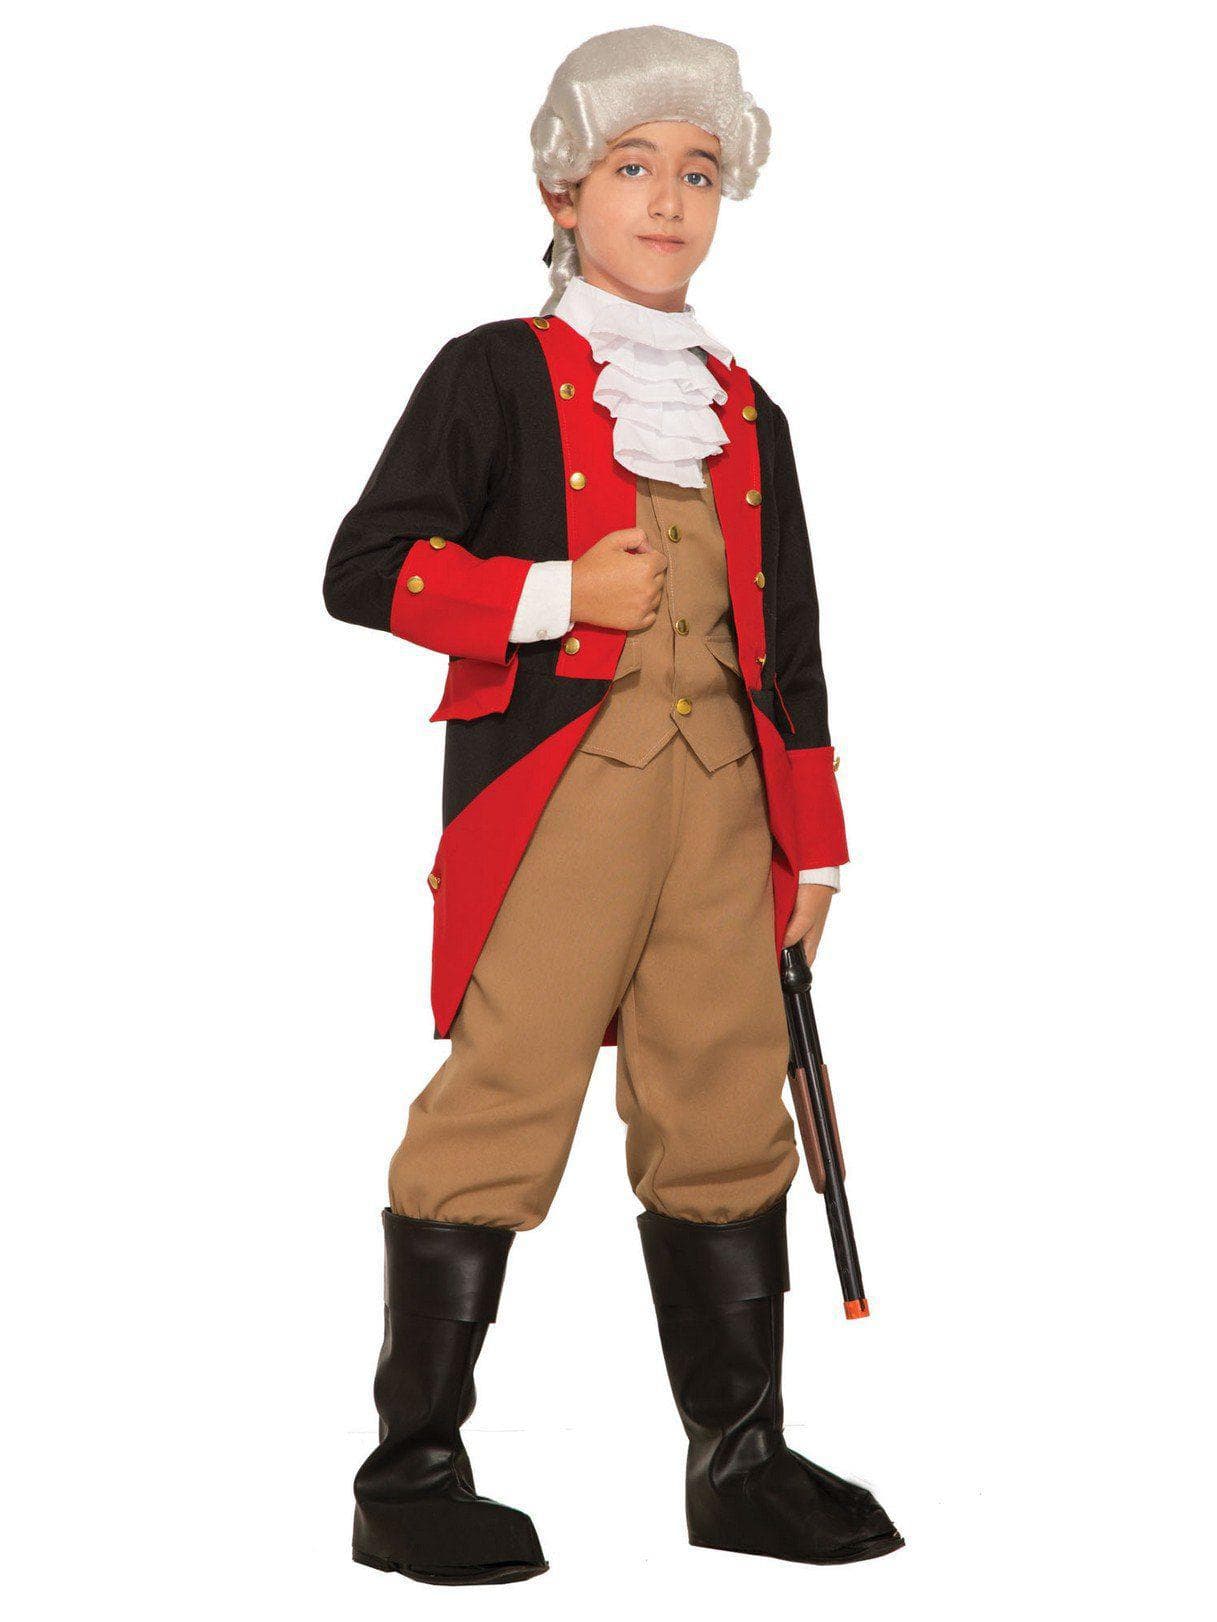 Kid's British Red Coat Costume - costumes.com